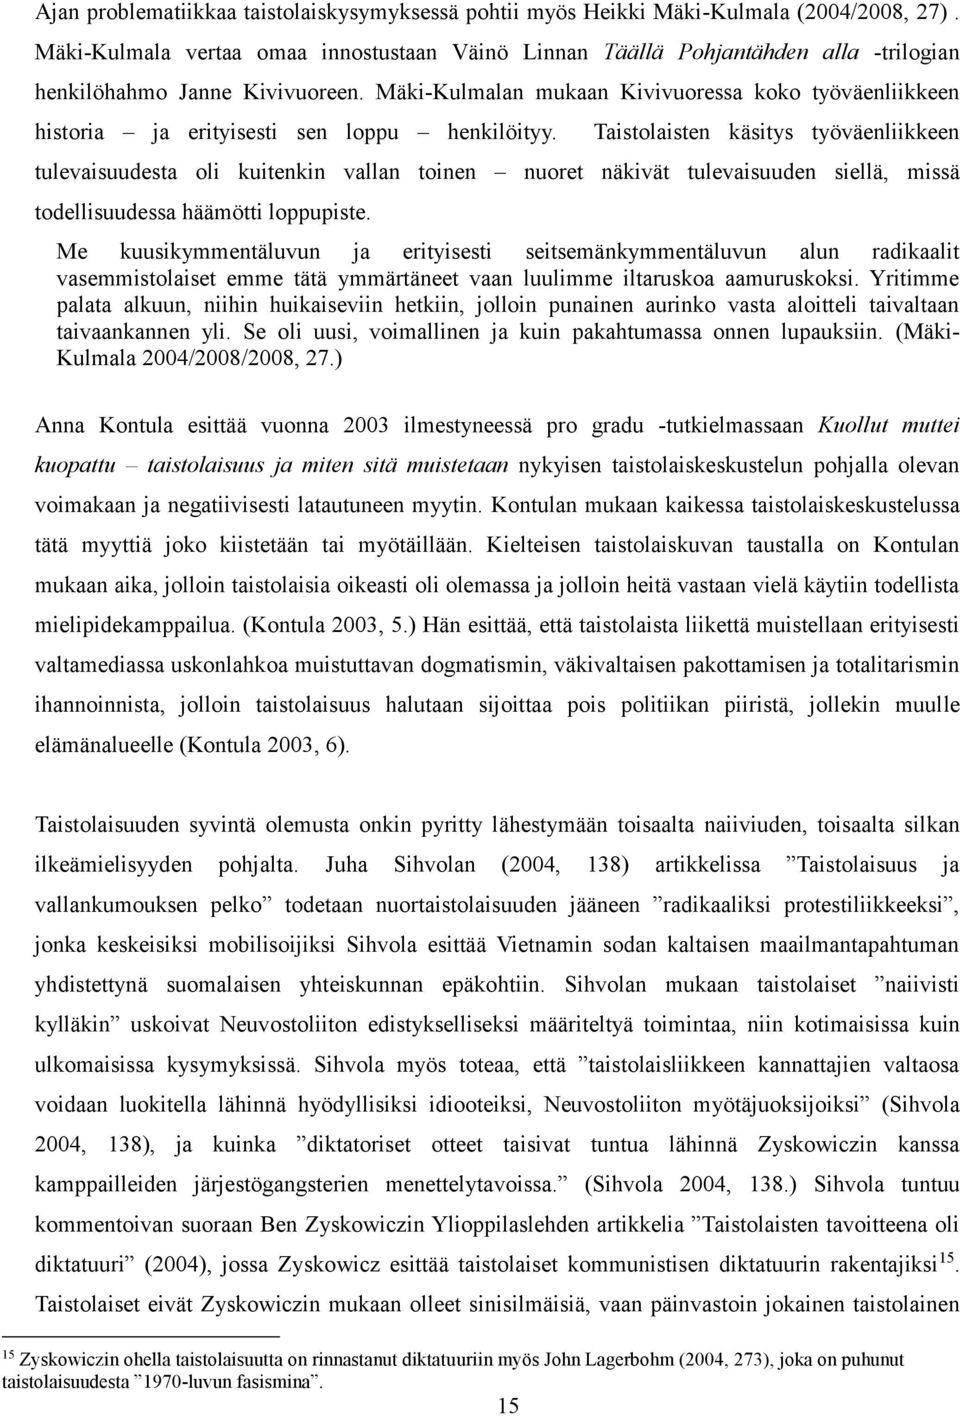 Mäki-Kulmalan mukaan Kivivuoressa koko työväenliikkeen historia ja erityisesti sen loppu henkilöityy.